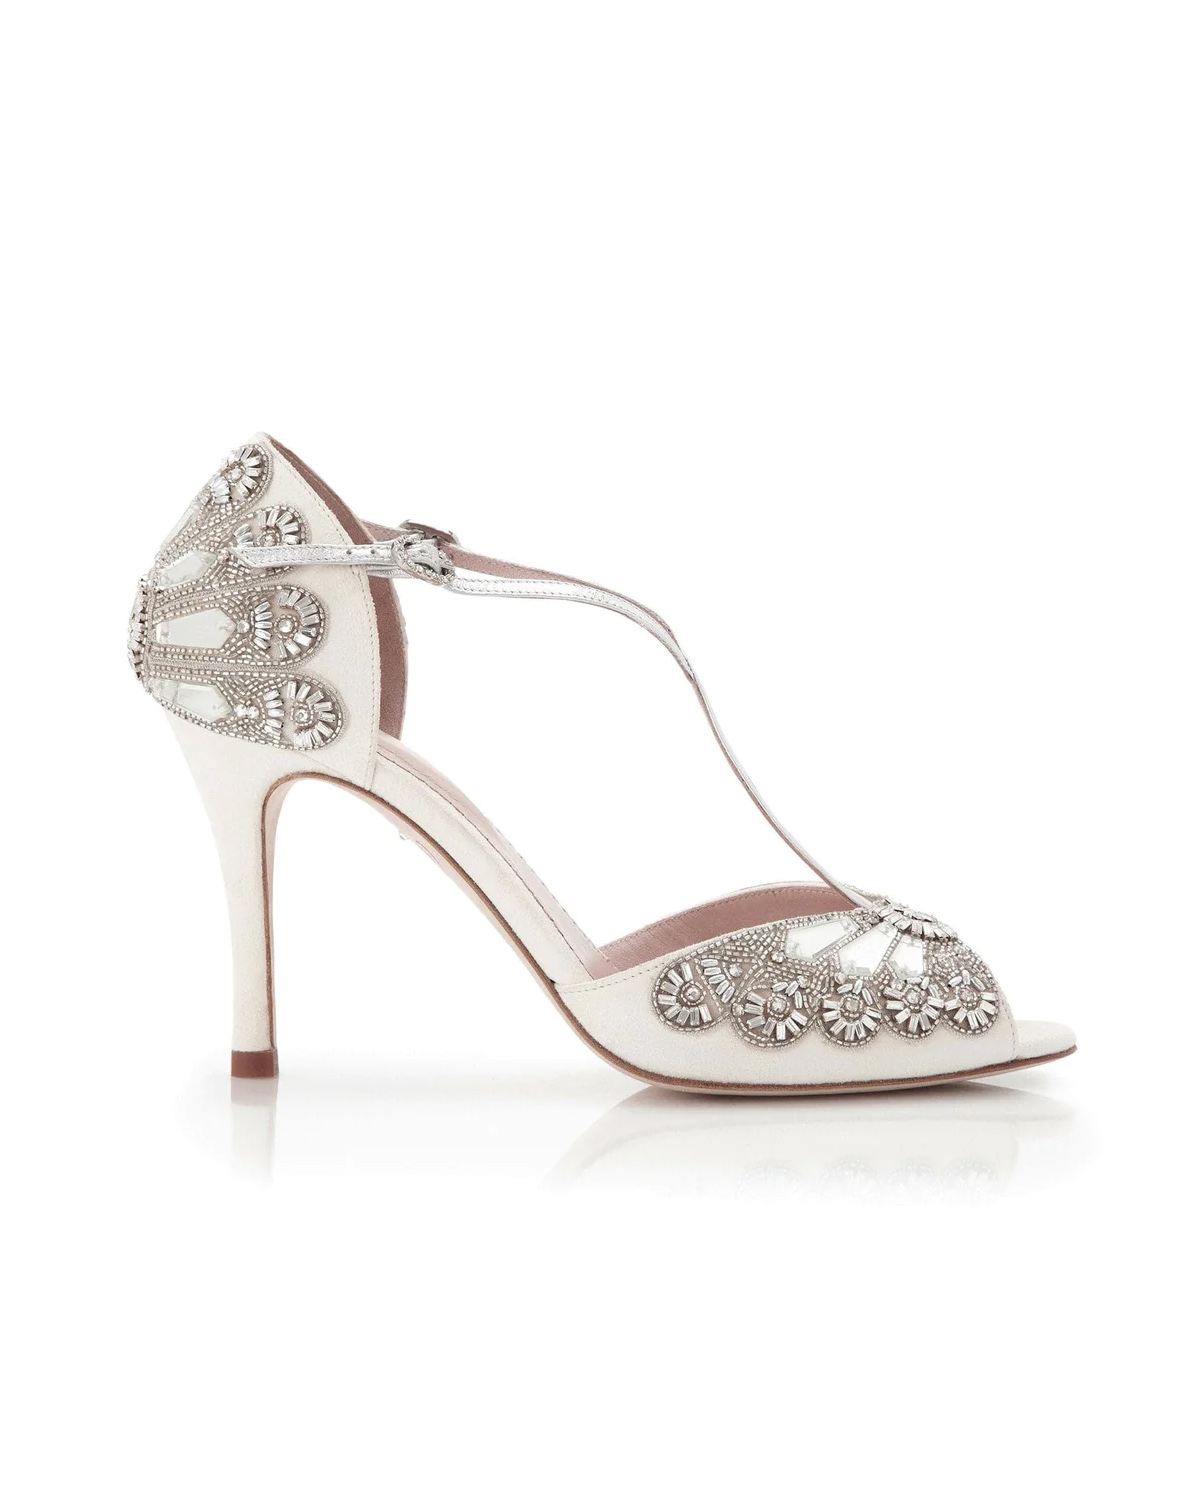 Cinderella Wedding Shoes Emmy London